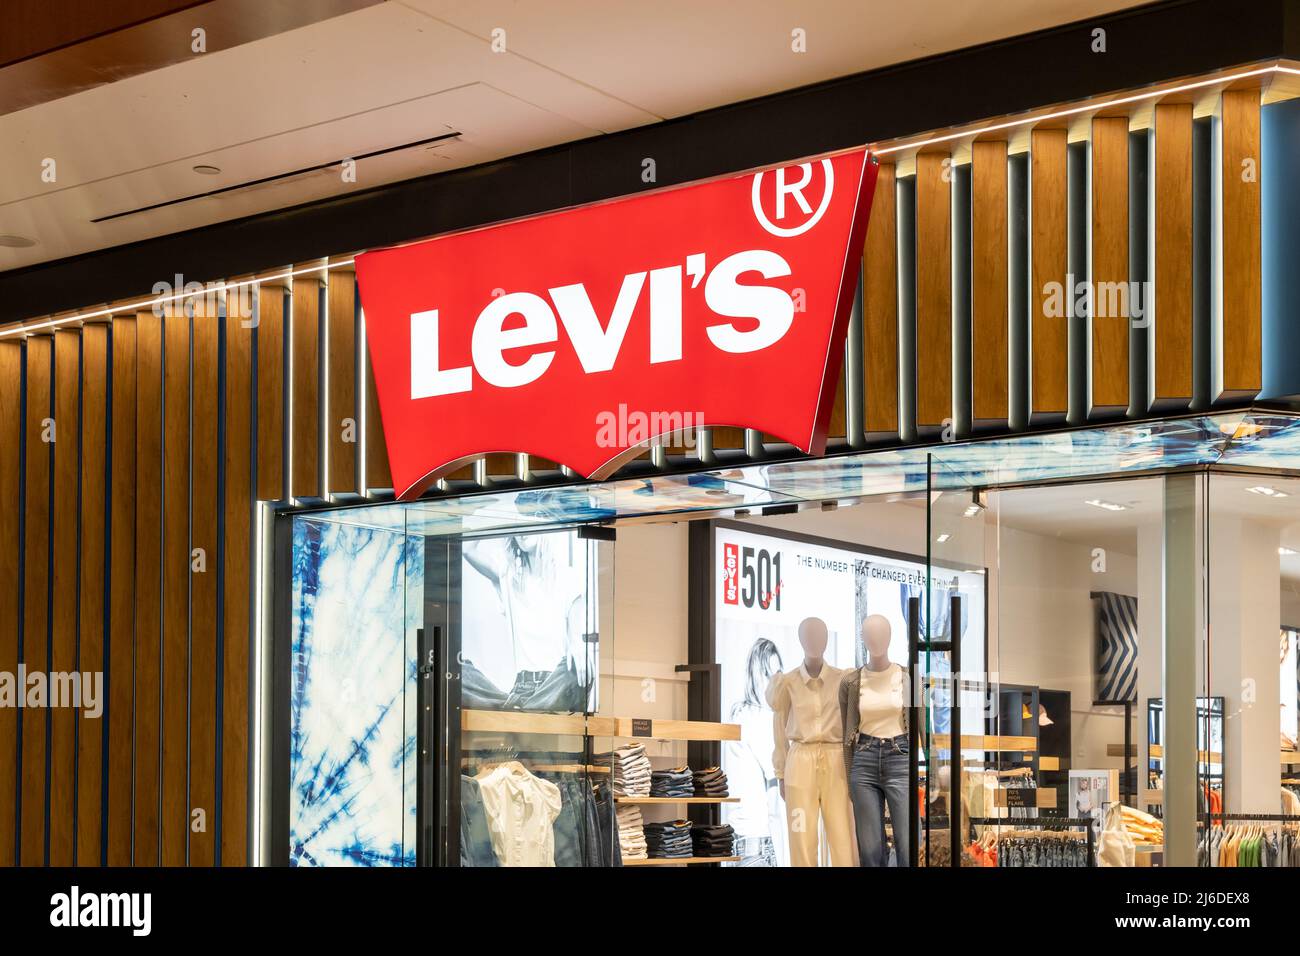 Levis store sign Banque de photographies et d'images à haute résolution -  Alamy